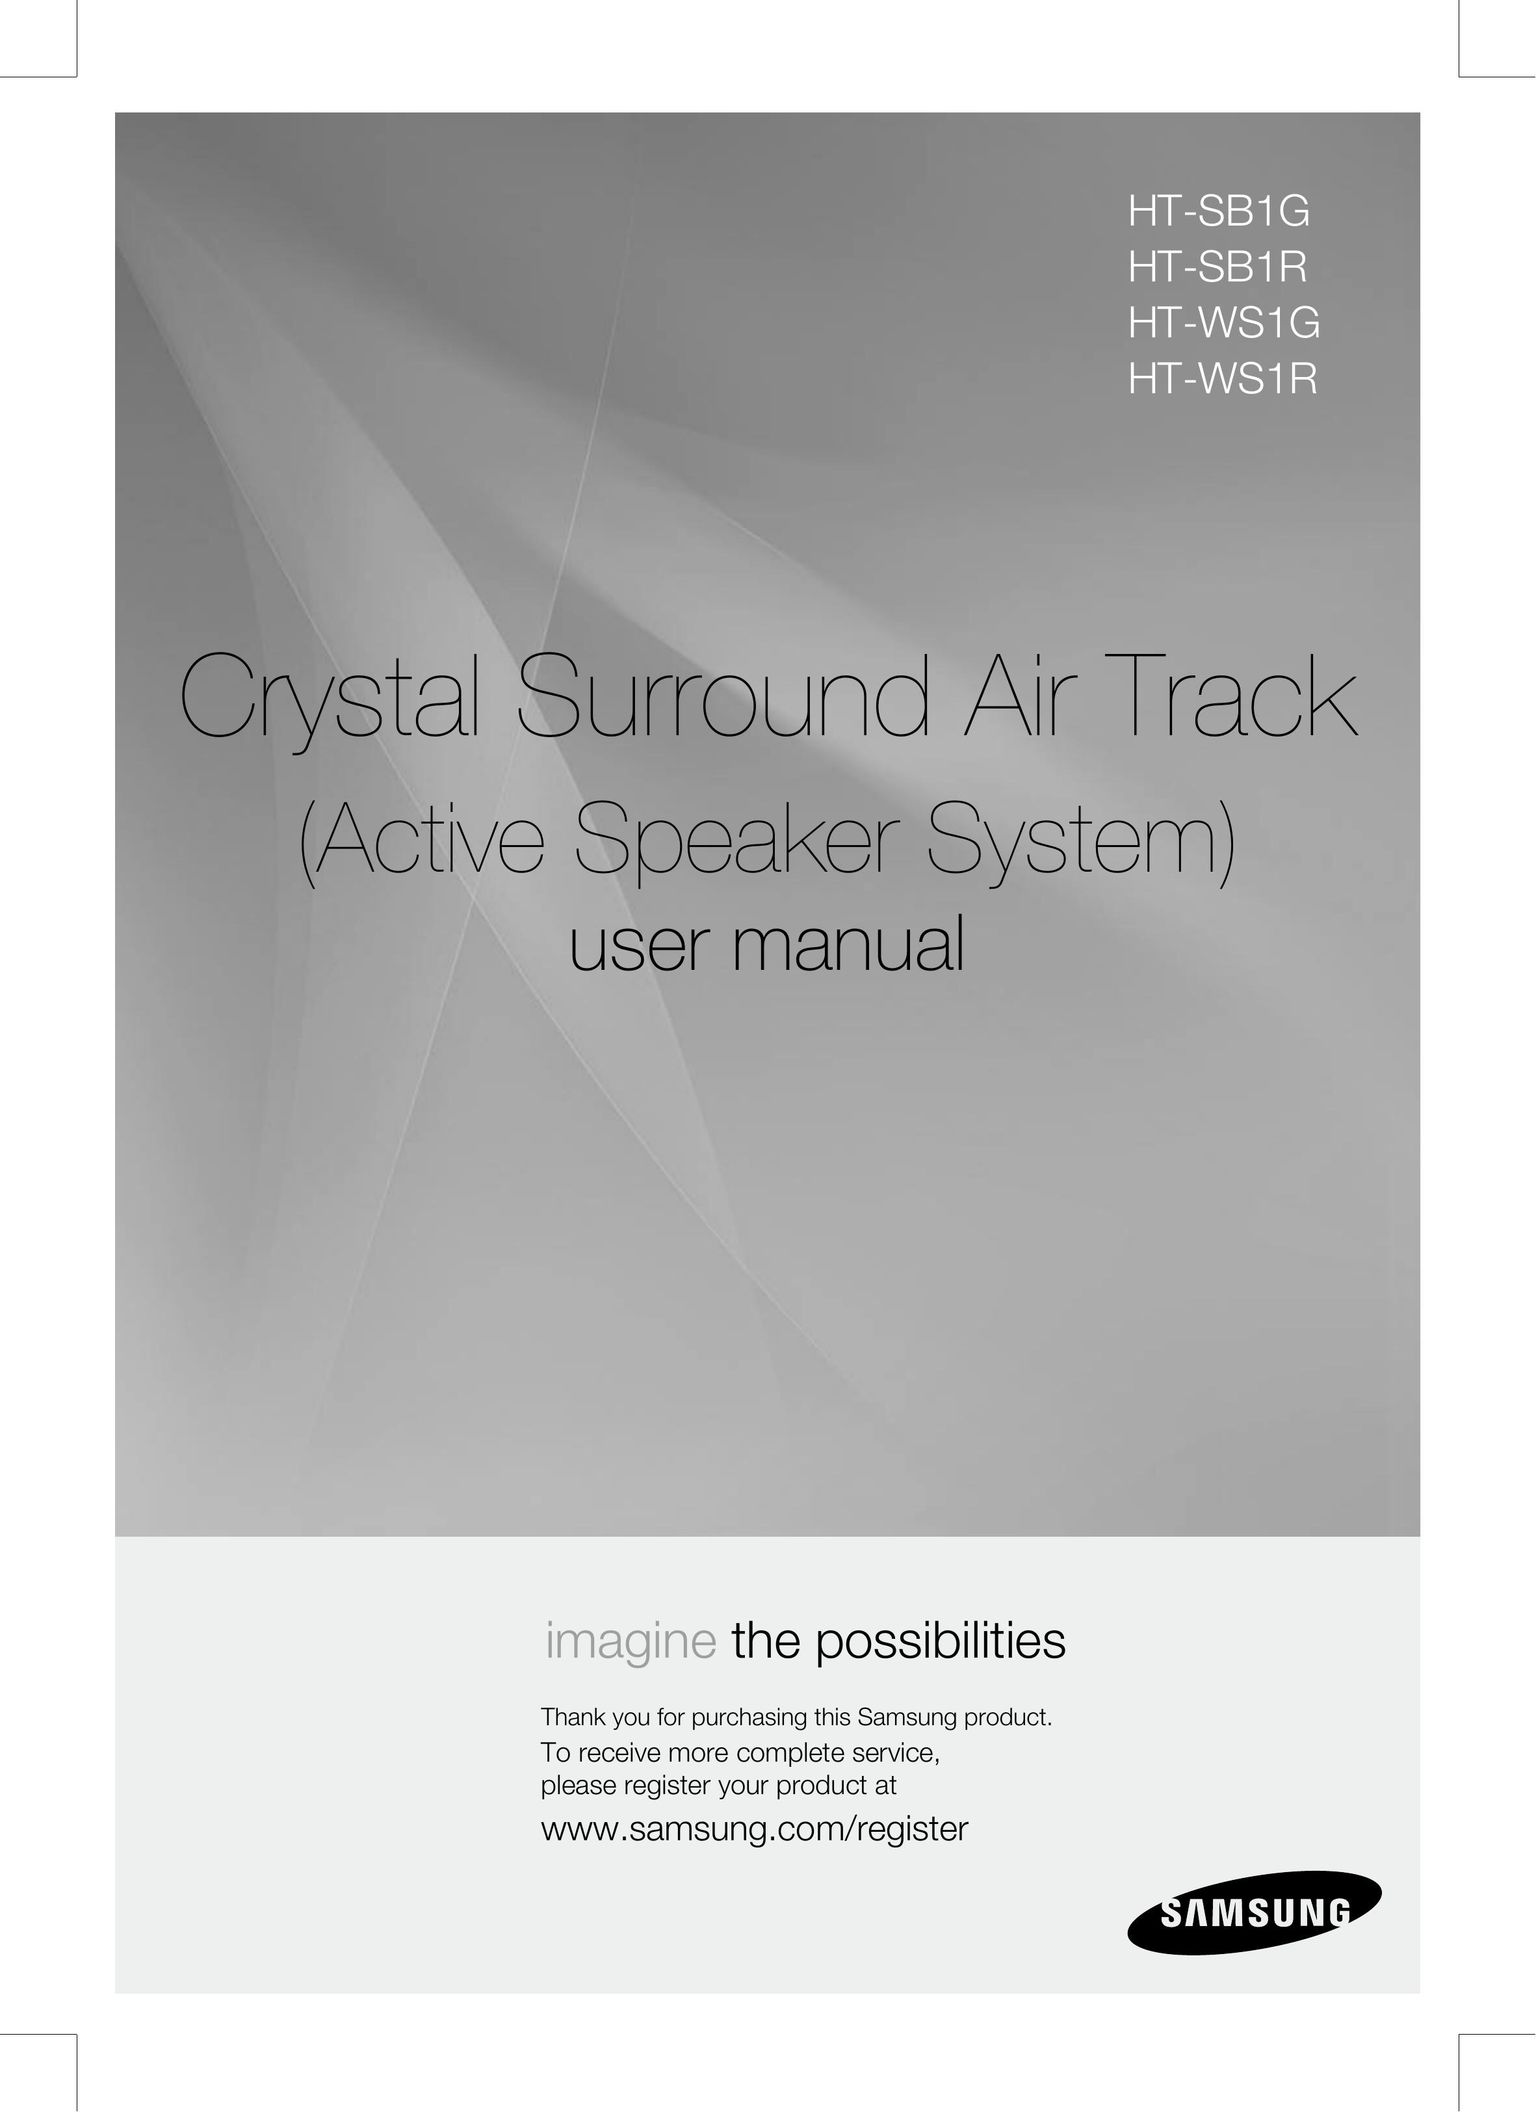 Samsung HT-SB1R Speaker System User Manual